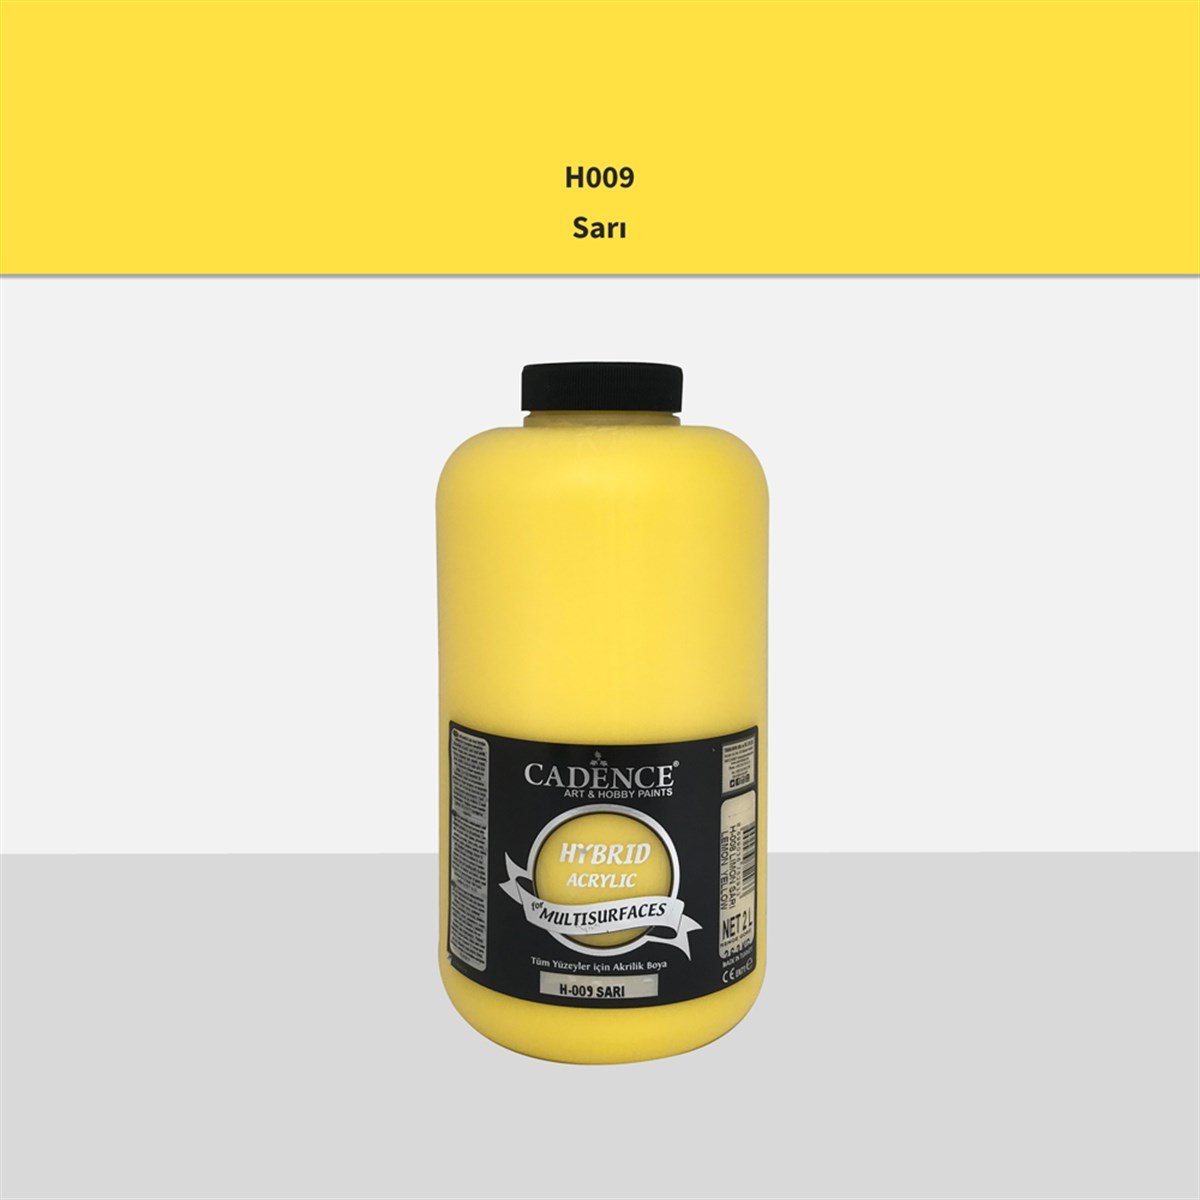 Cadence H009 Sarı Multisurface Akrilik Boya 2LT (3 kg)